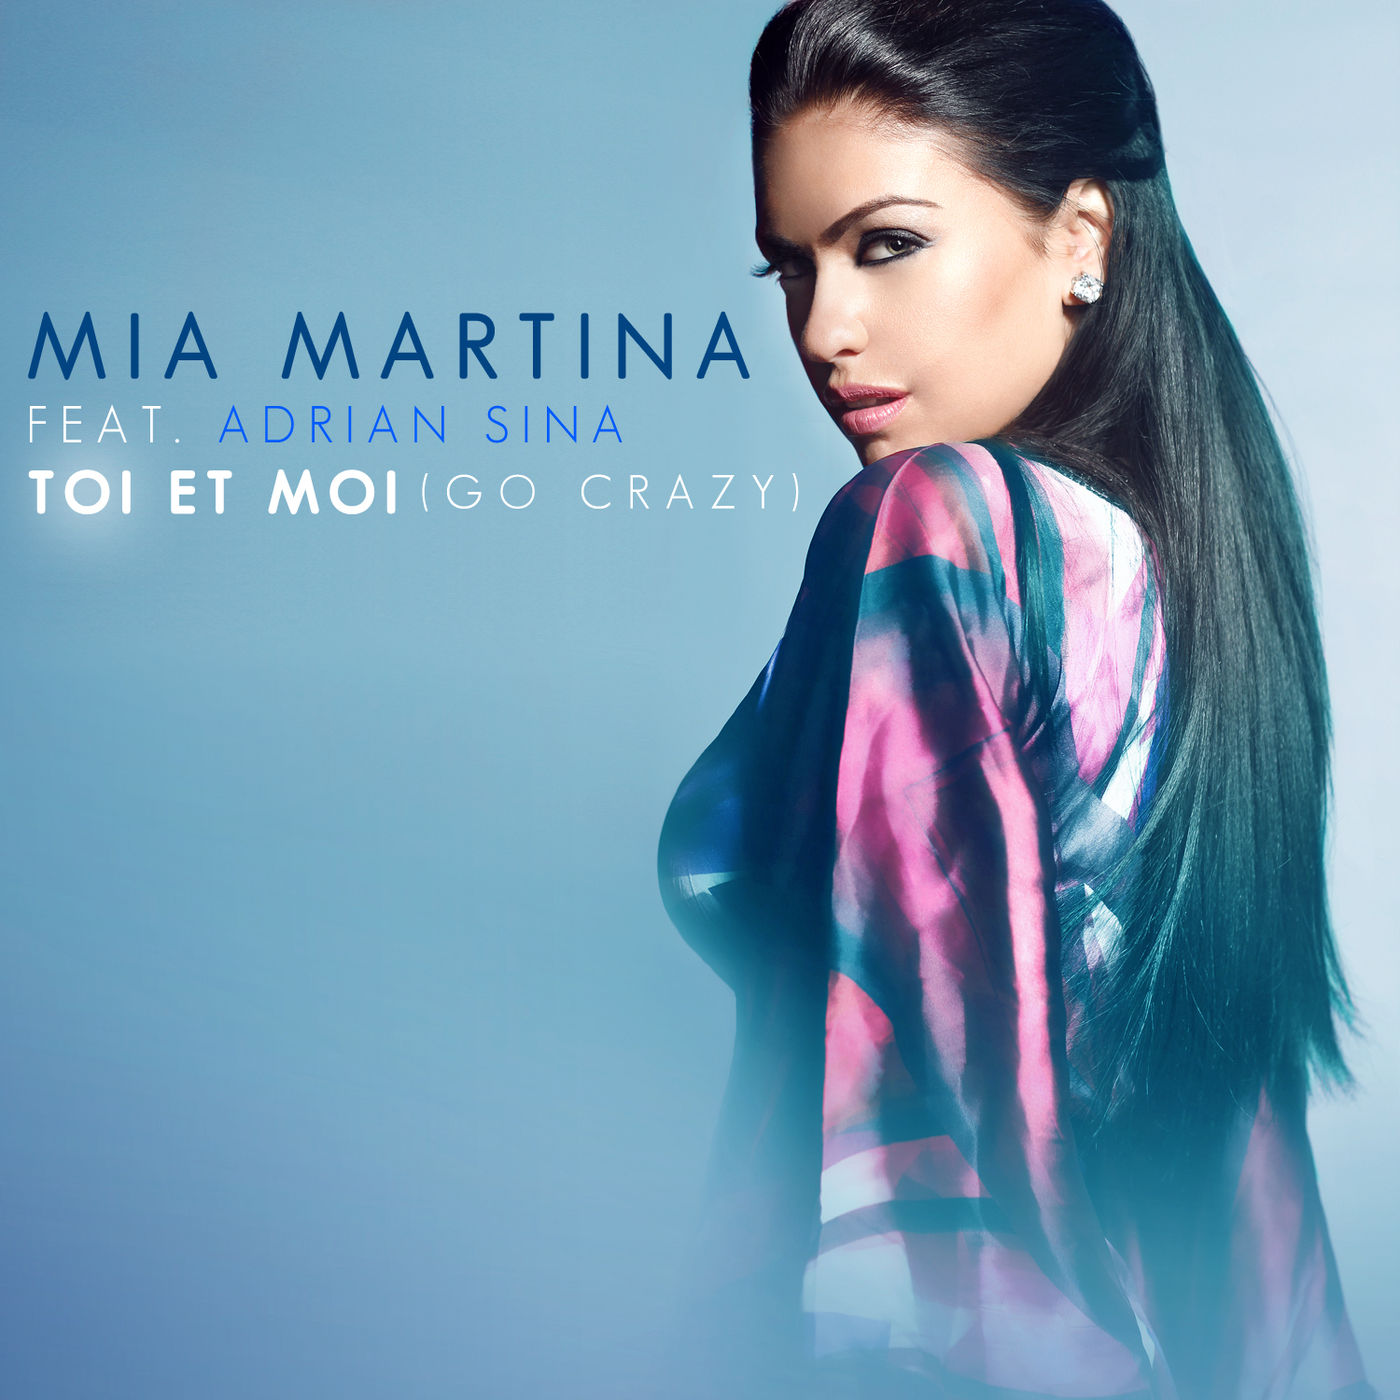 Mias feat. Mia Martina tu me manques. Mia Martina обложка. Обложка альбома Mia.